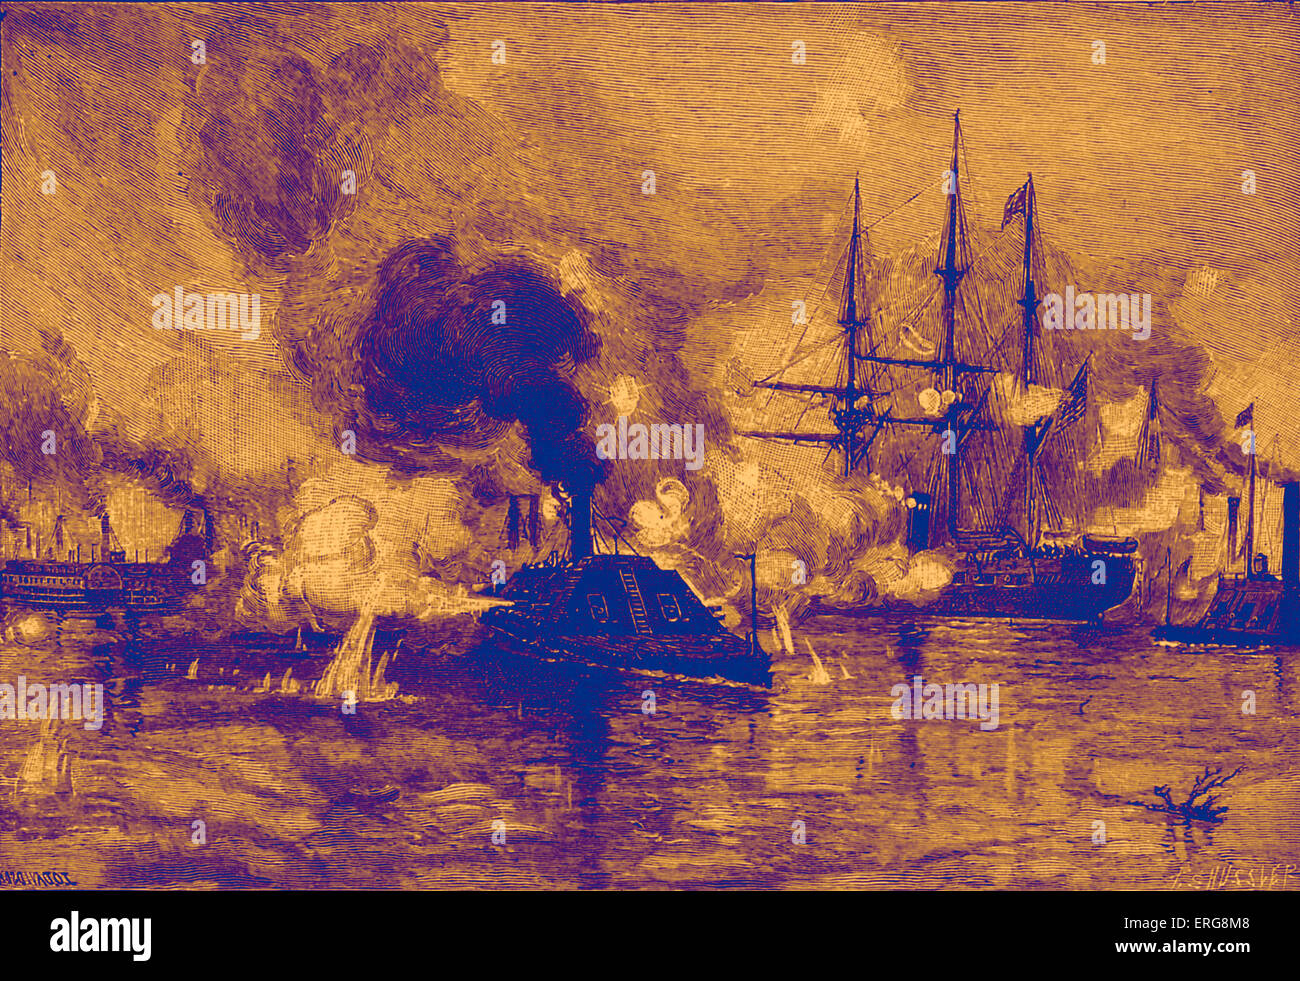 CSS Arkansas in esecuzione attraverso la flotta europea in Vicksburg il 15 luglio 1862, durante la Guerra Civile Americana, come illustrato da J O Foto Stock